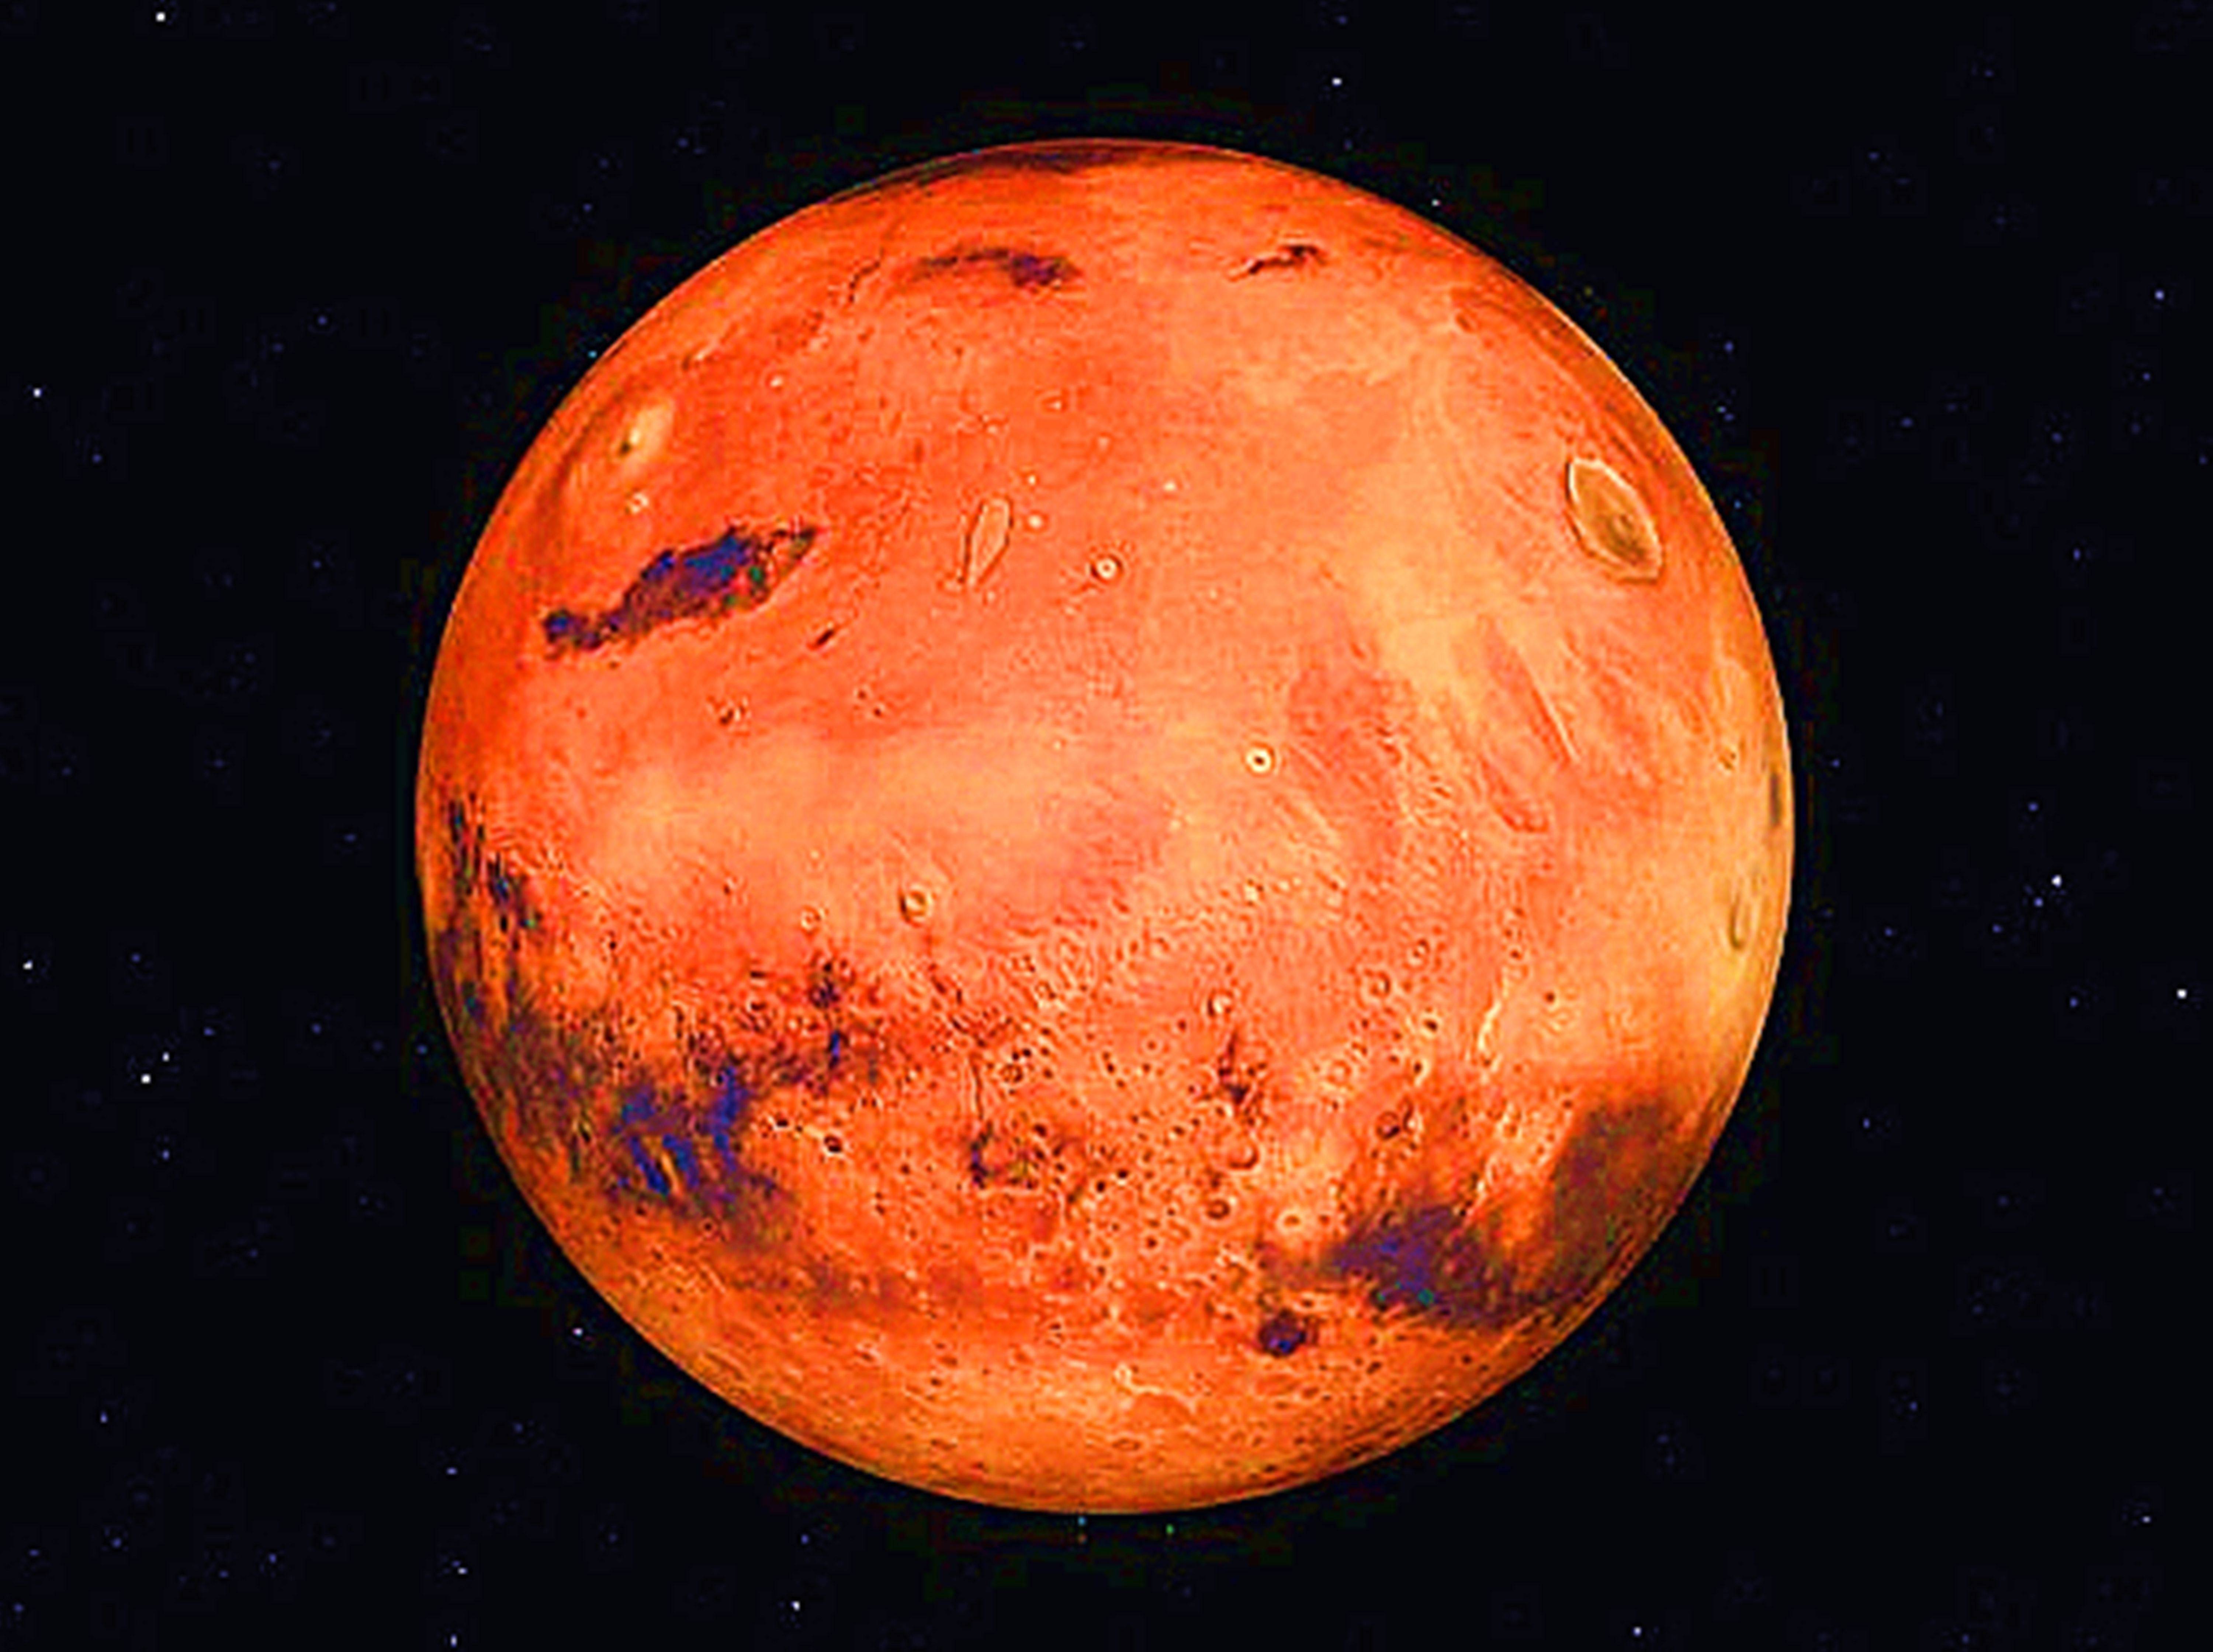 通过对火星地下生物圈的新理论研究表明:火星上确实可能存在生命